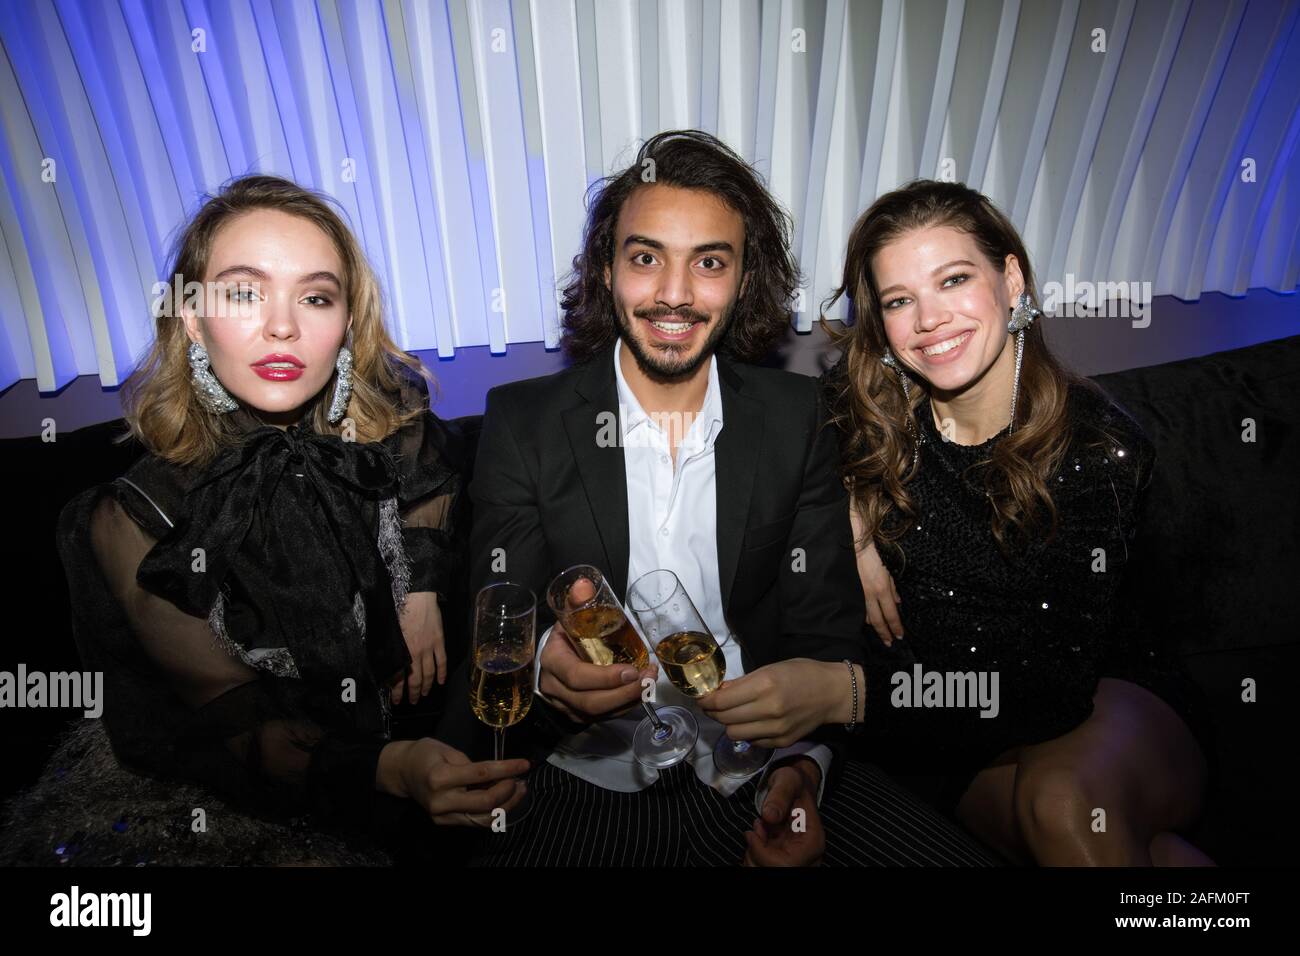 Trois jeunes amis glamour avec des flûtes de champagne sitting on couch Banque D'Images